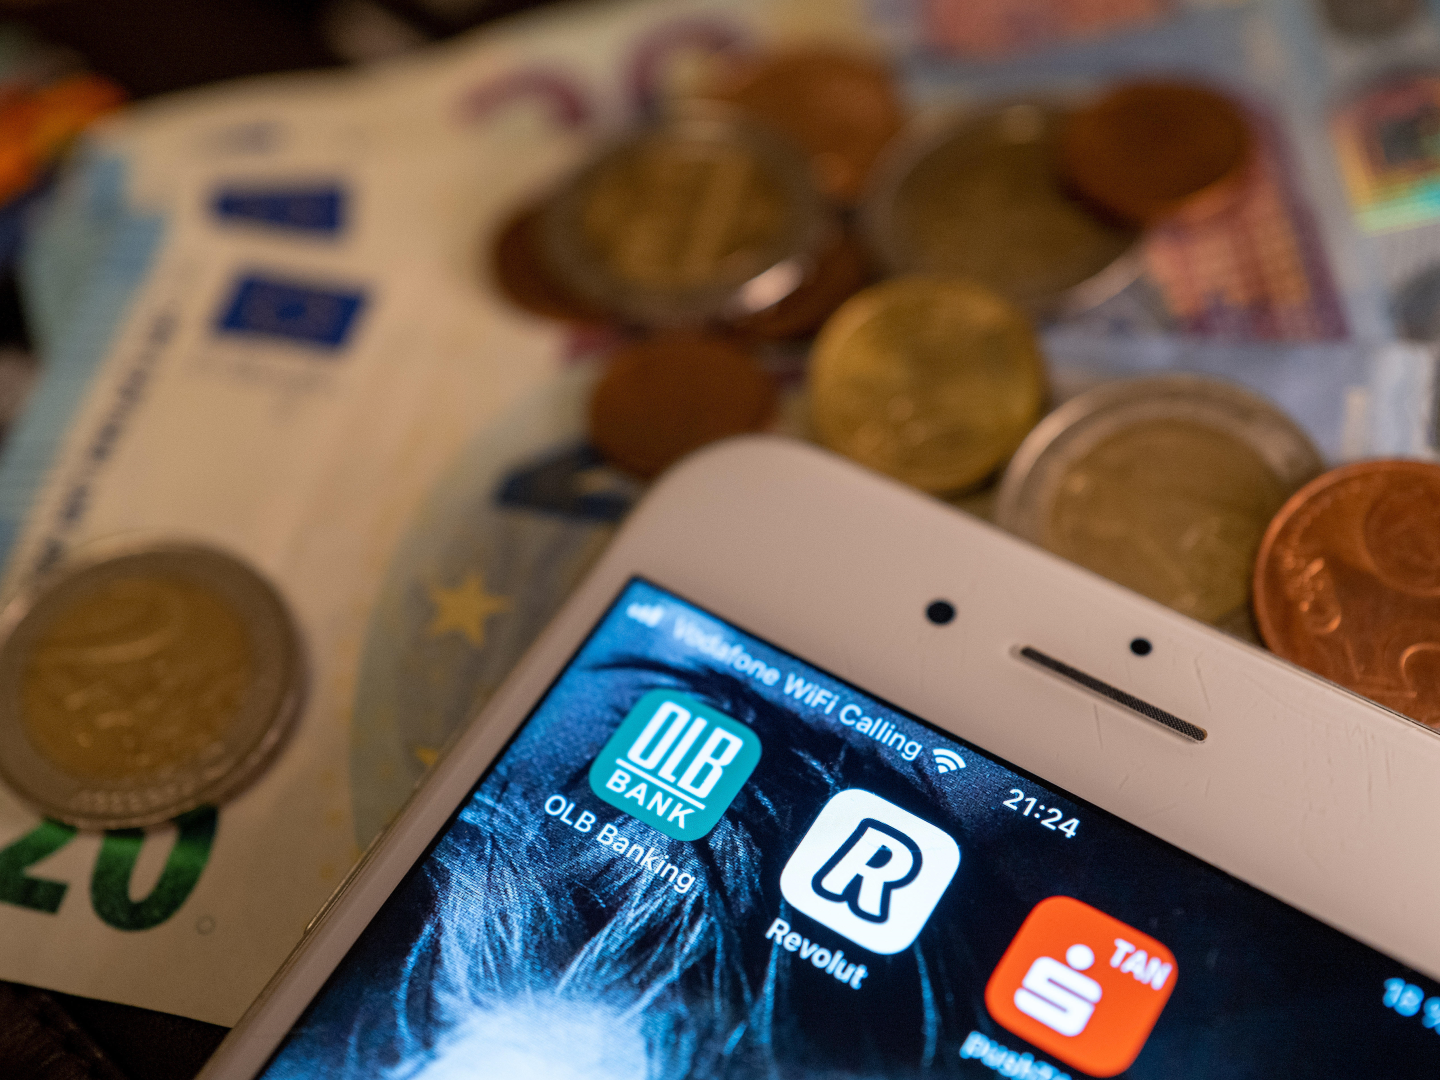 Die App der britischen Finanzplattform Revolut wird auf dem Bildschirm eines Smartphones neben Apps weiterer Finanz- und Bezahldienster angezeigt. | Foto: picture alliance/dpa/dpa-Zentralbild | Monika Skolimowska